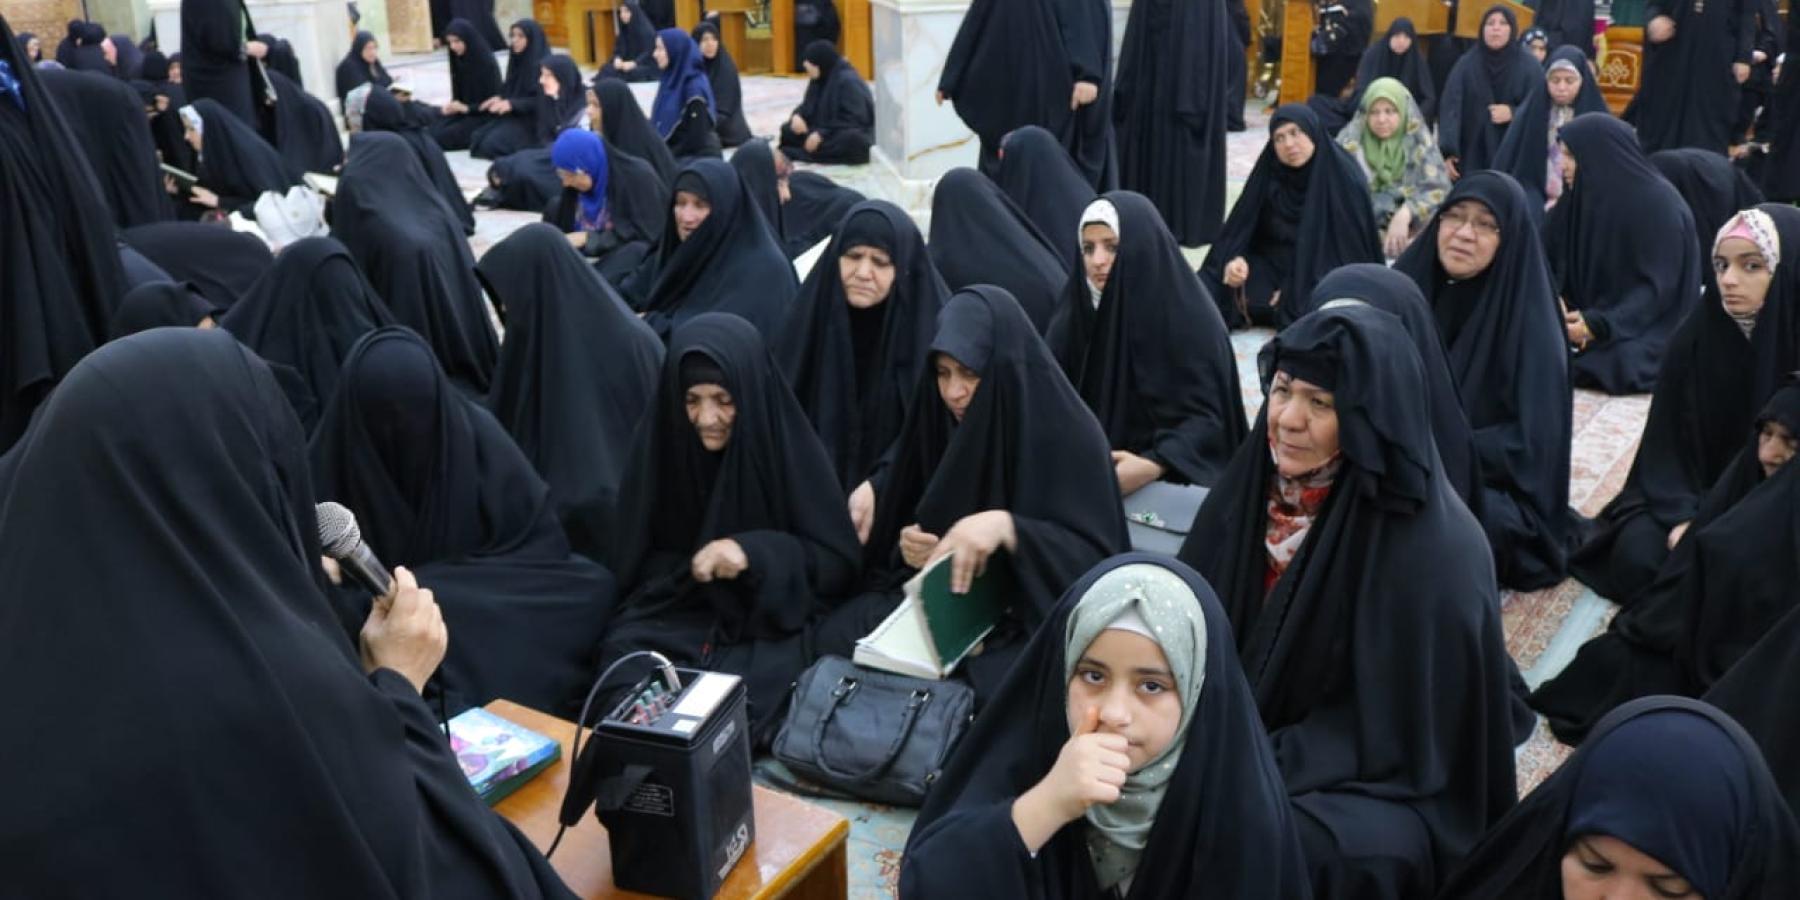 شعبة التعليم الديني النسوي تطلق برنامجا توجيهيا بمناسبة شهادة الإمام الصادق(عليه السلام)